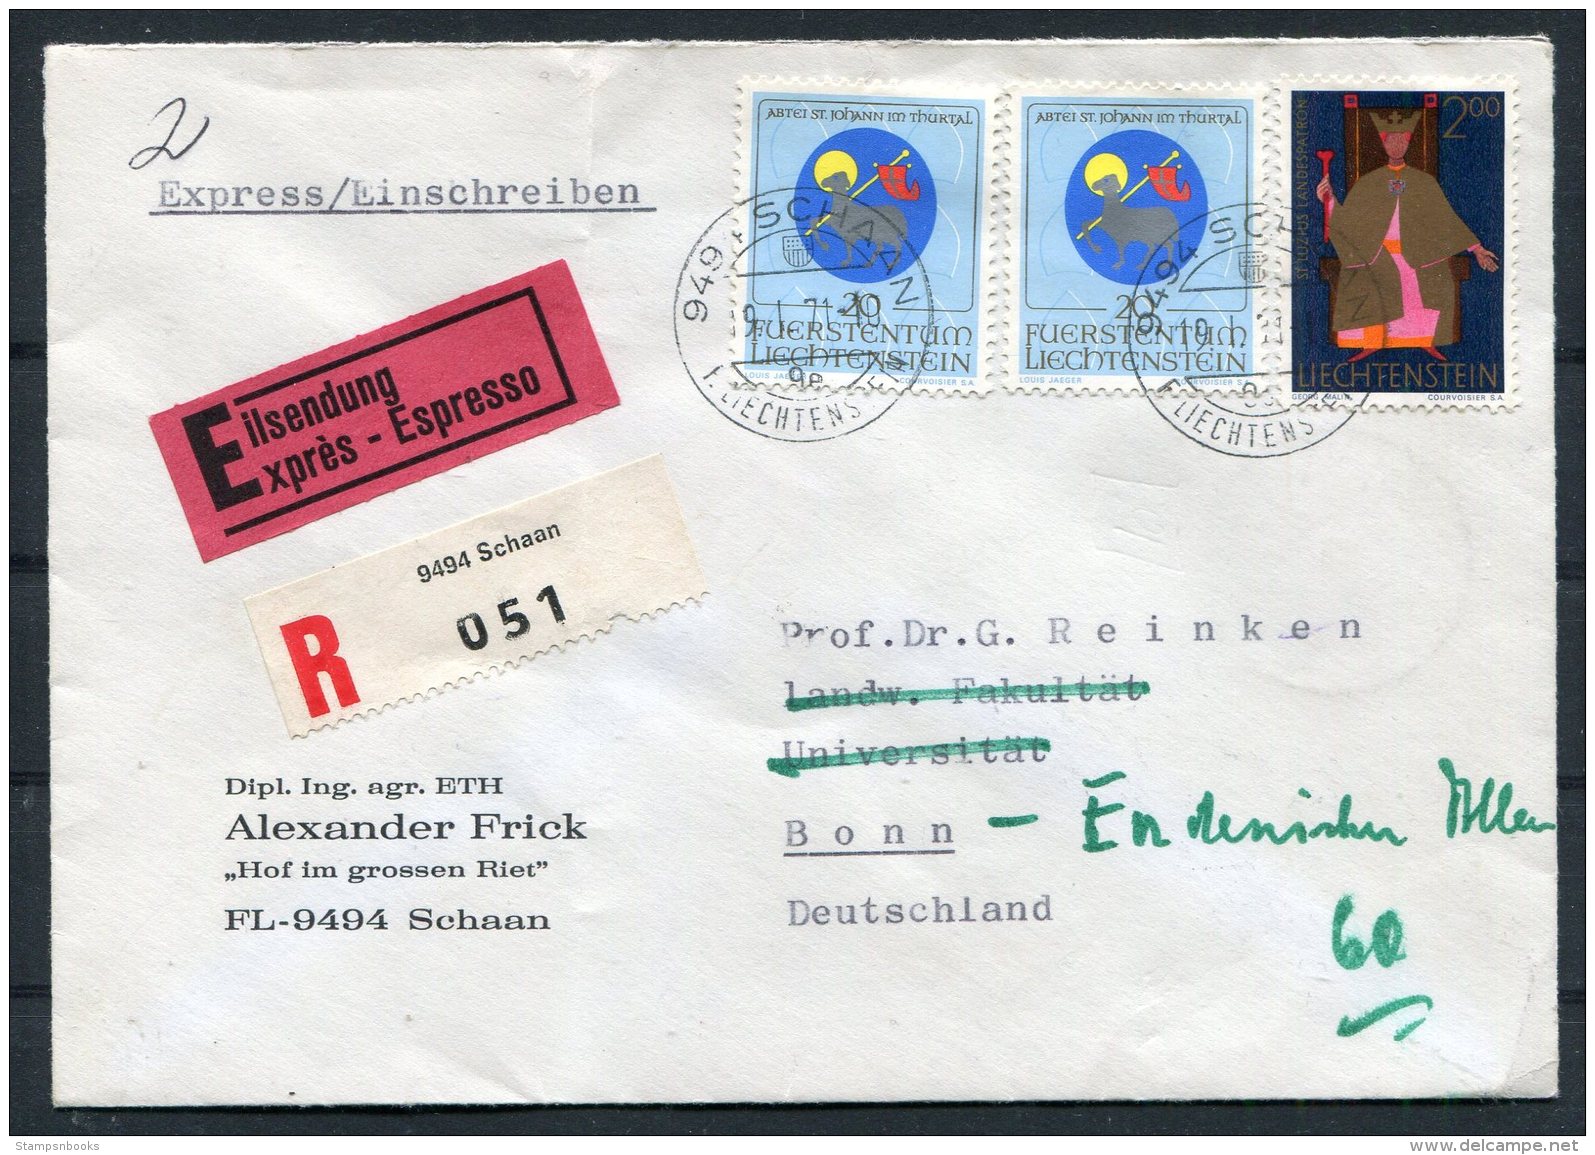 1971 Liectenstein Schaan Express Registered Cover - Bonn Via Koln/Bonn Flughafen - Covers & Documents